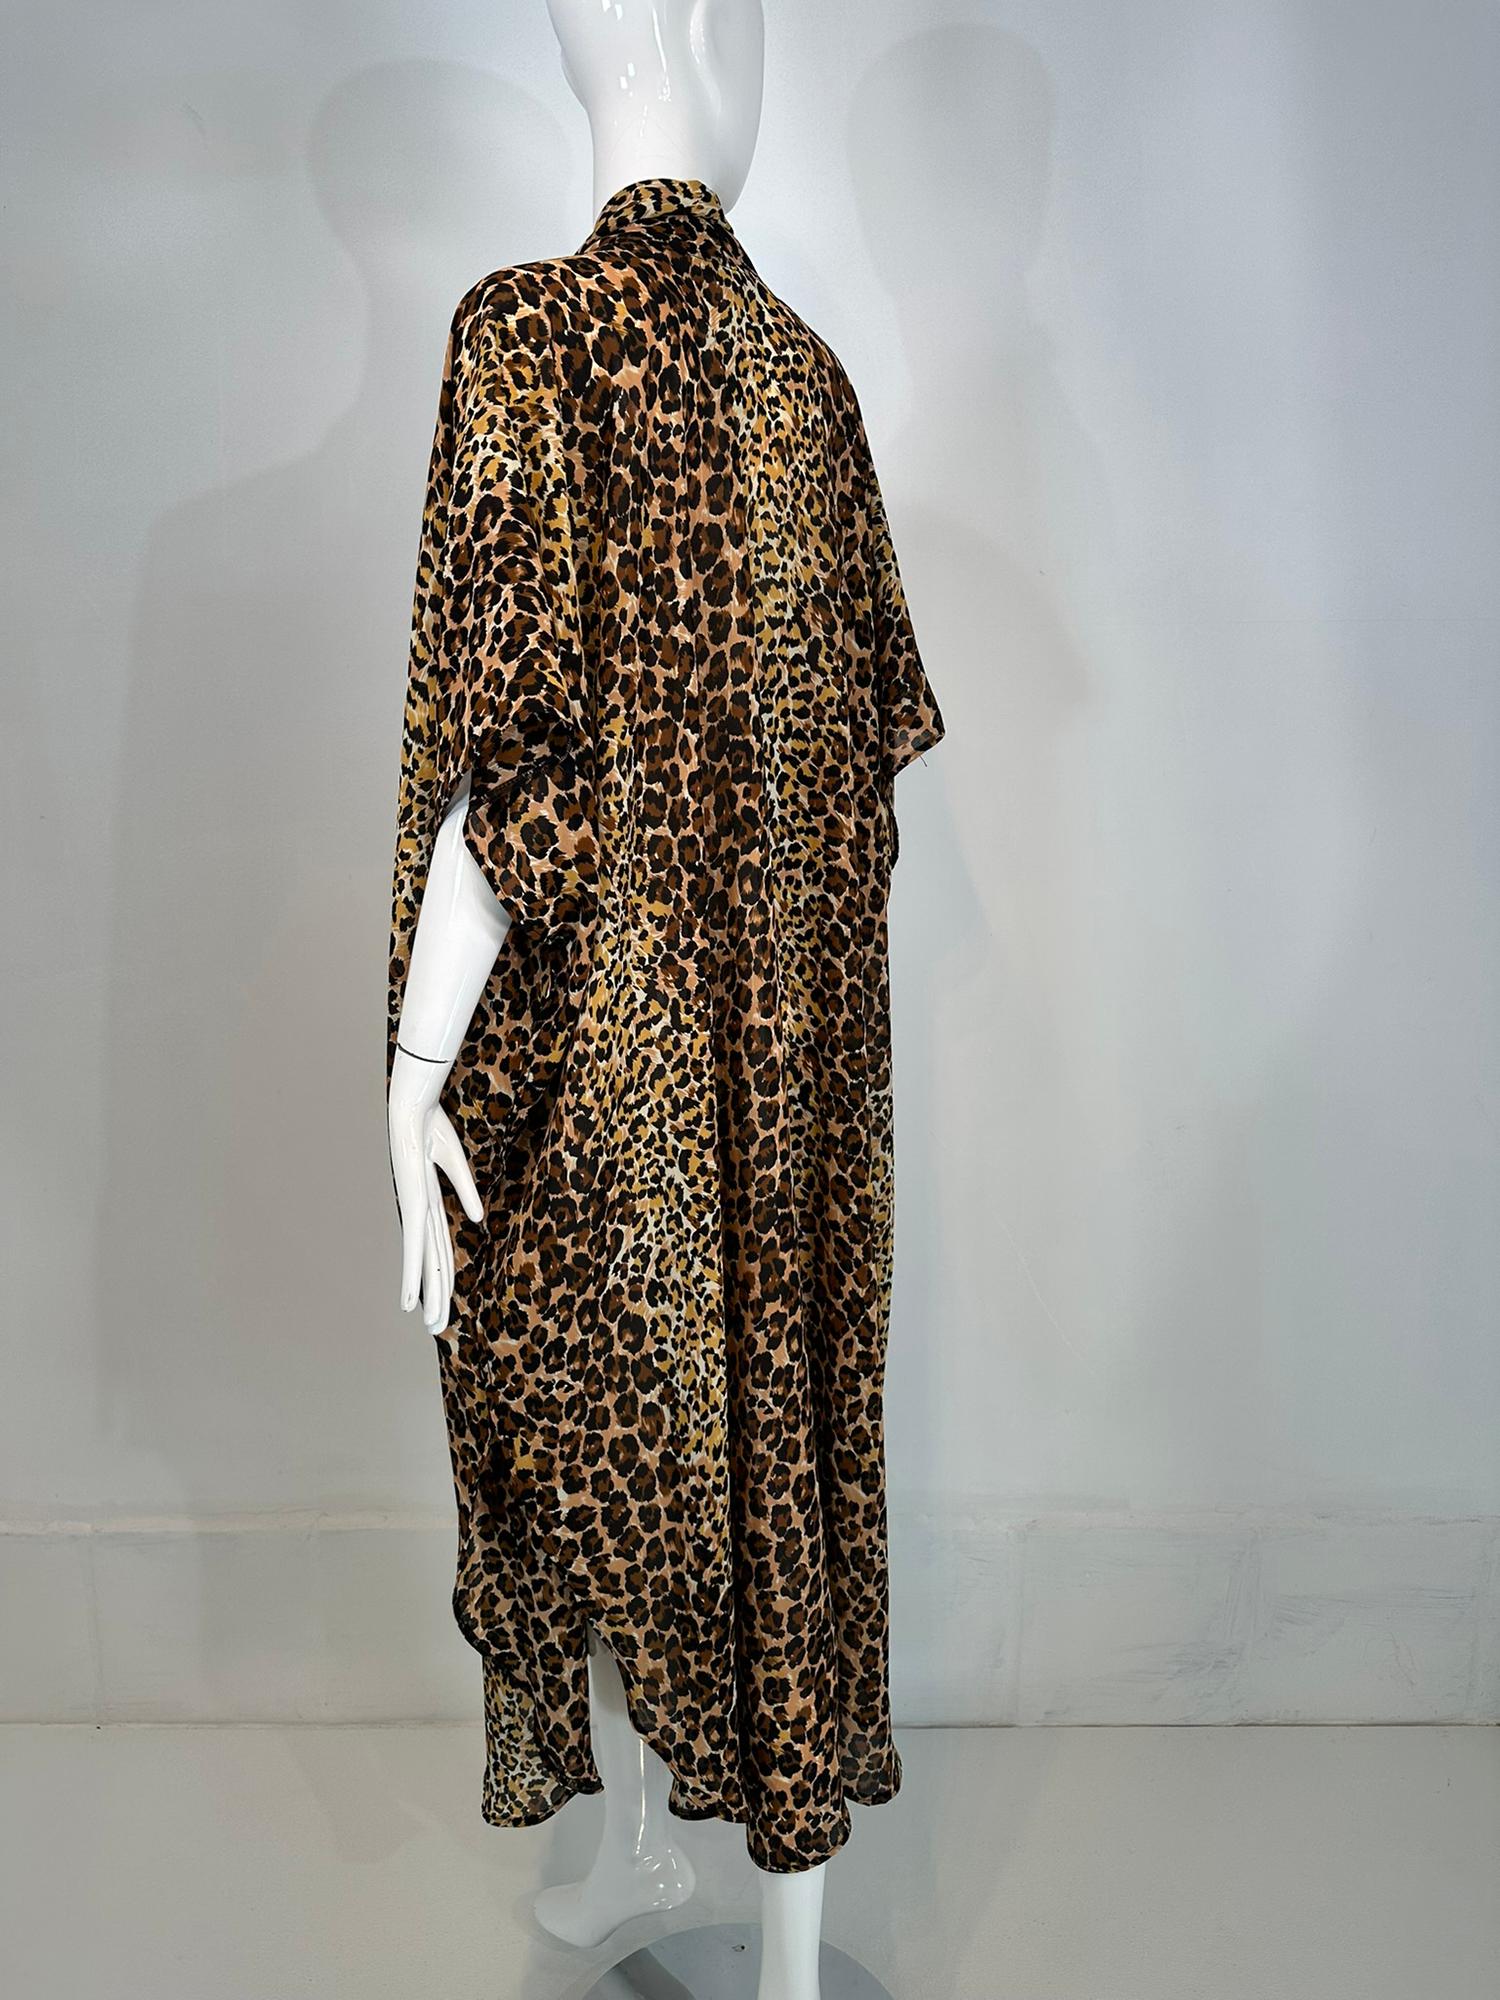 Women's 1960s Leopard Pint Crepe Caftan Robe by Marjorie Ellin Inc.  For Sale